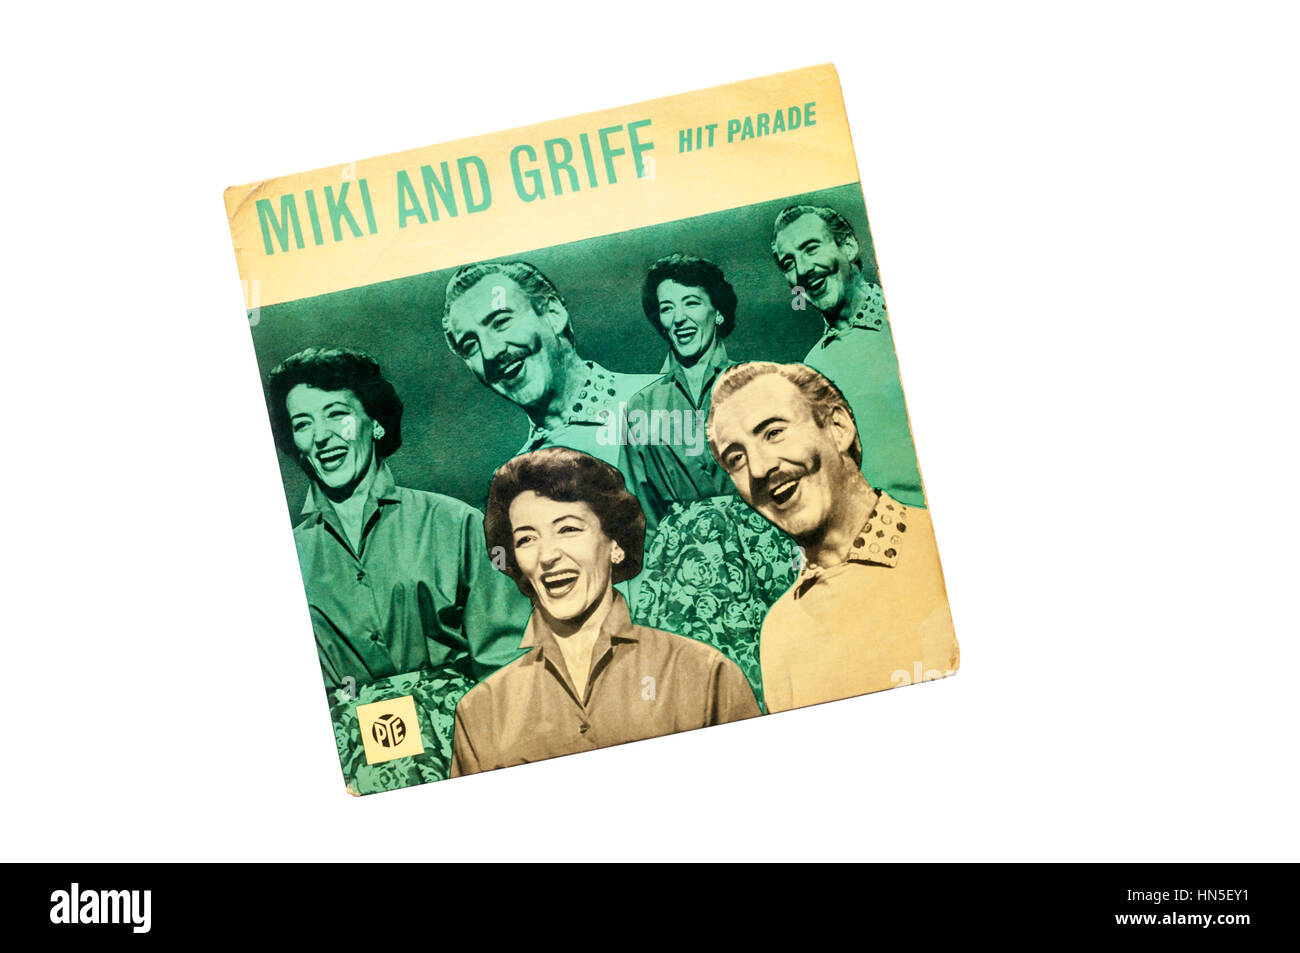 EP-Hitparade von Miki und Griff von Pye 1960 veröffentlicht. Stockfoto